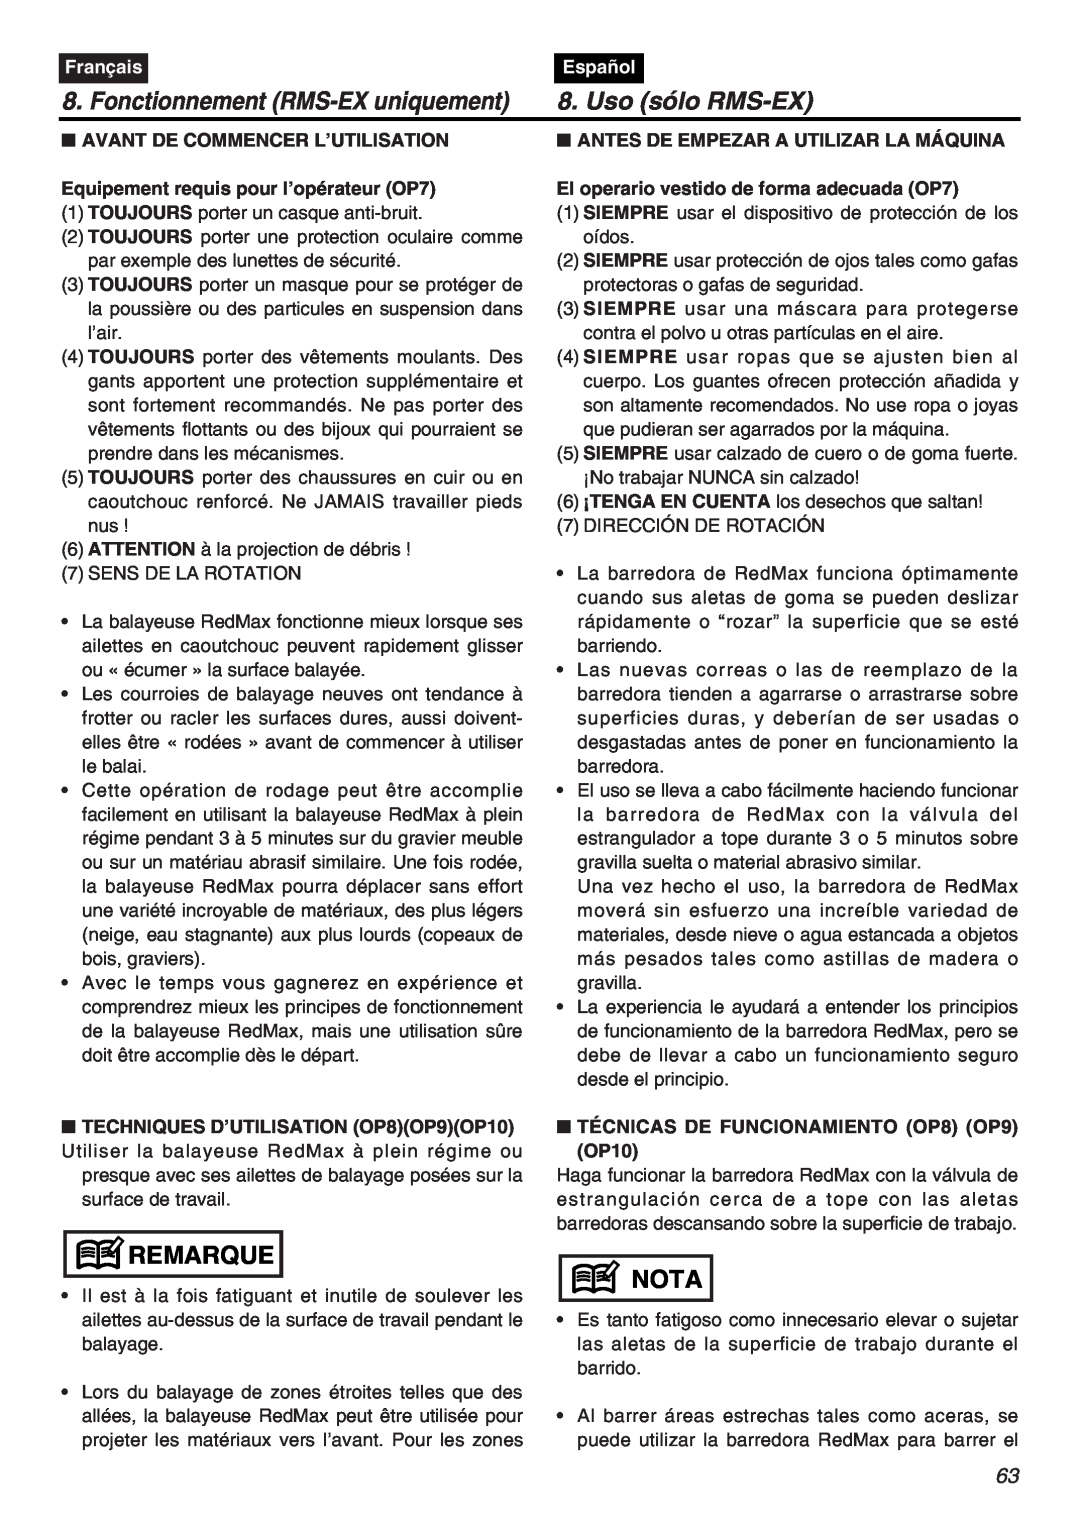 RedMax EXZ2401S-PH-CA manual Fonctionnement RMS-EX uniquement, Uso sólo RMS-EX, Remarque, Nota, Français, Español 